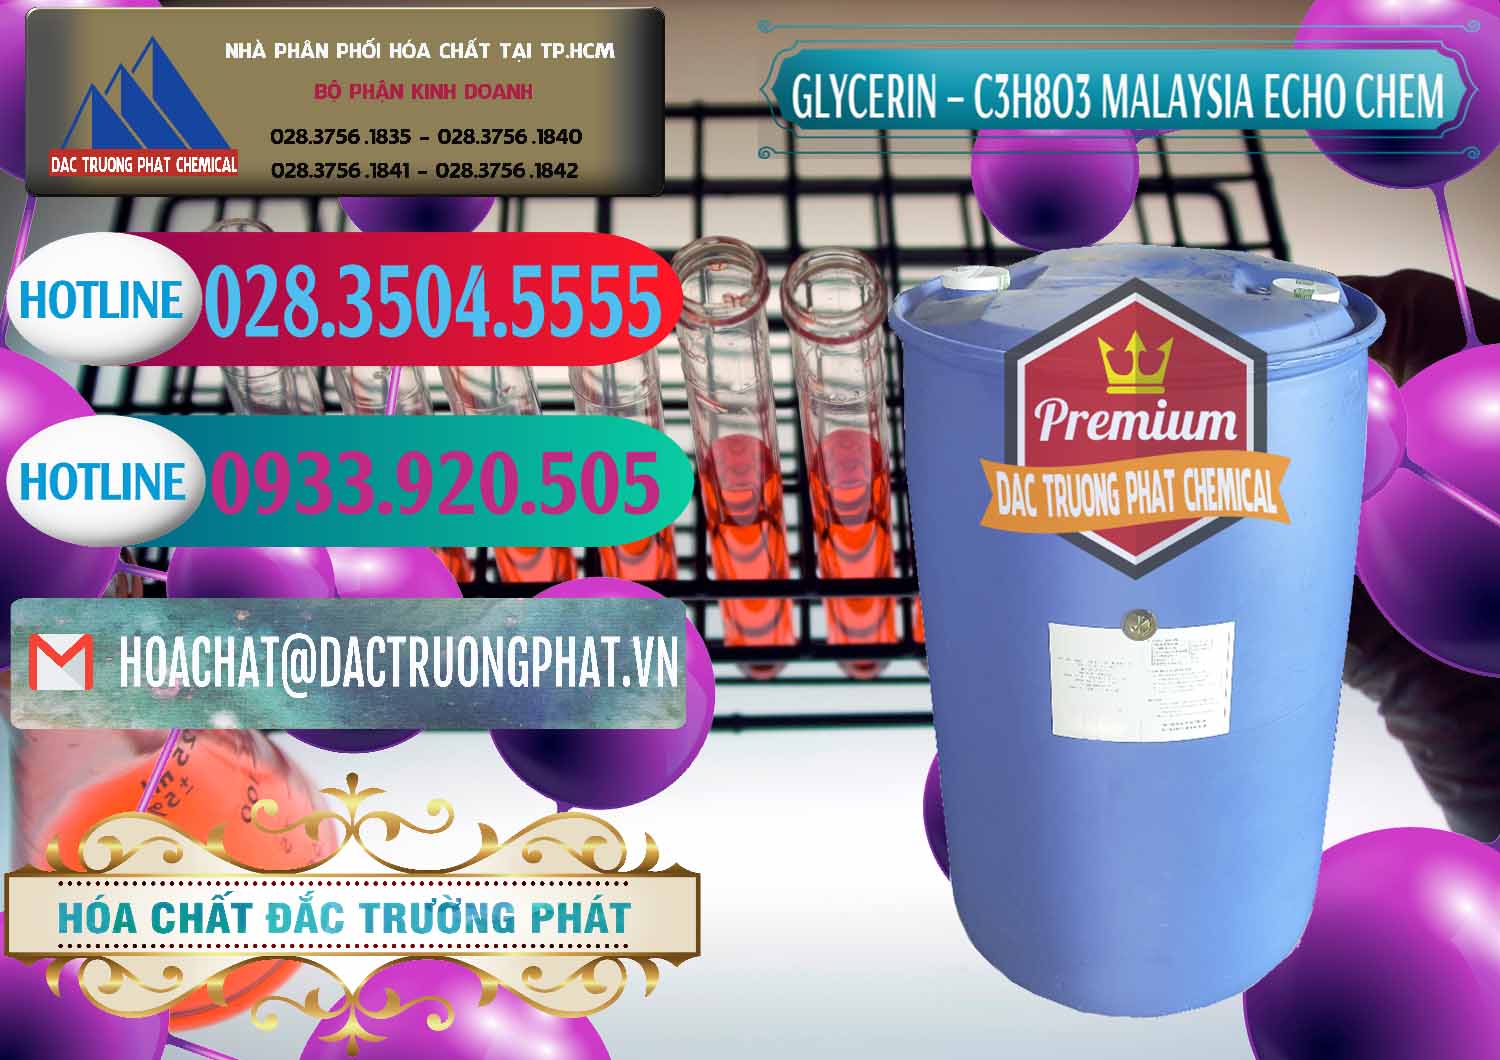 Đơn vị chuyên bán ( cung ứng ) C3H8O3 - Glycerin 99.7% Echo Chem Malaysia - 0273 - Đơn vị kinh doanh và phân phối hóa chất tại TP.HCM - truongphat.vn